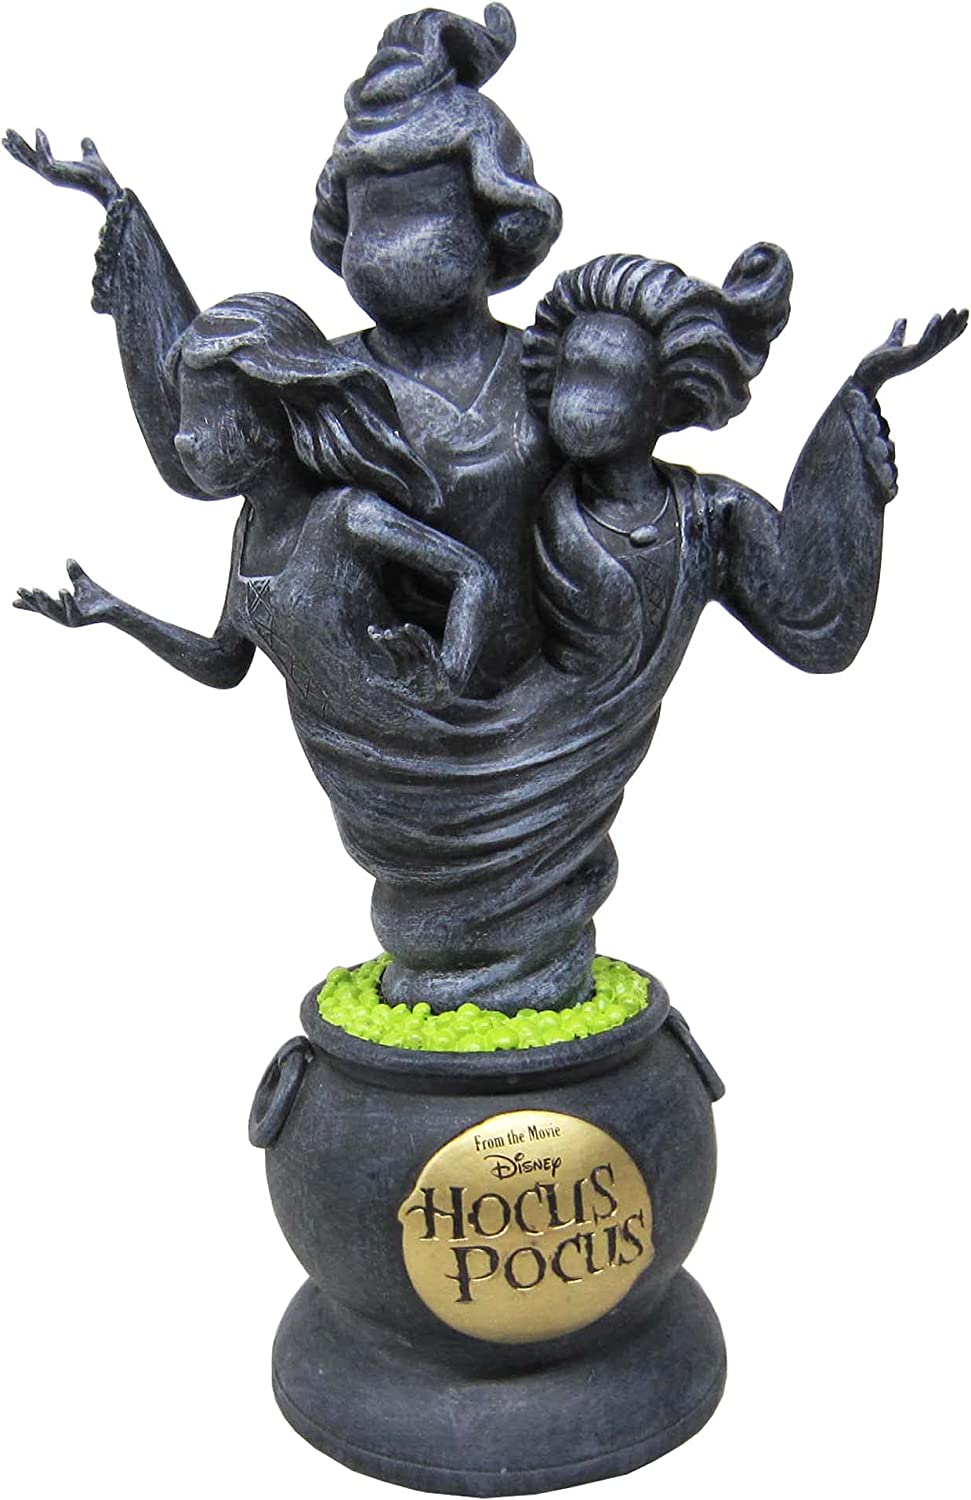 Hocus Pocus Statue